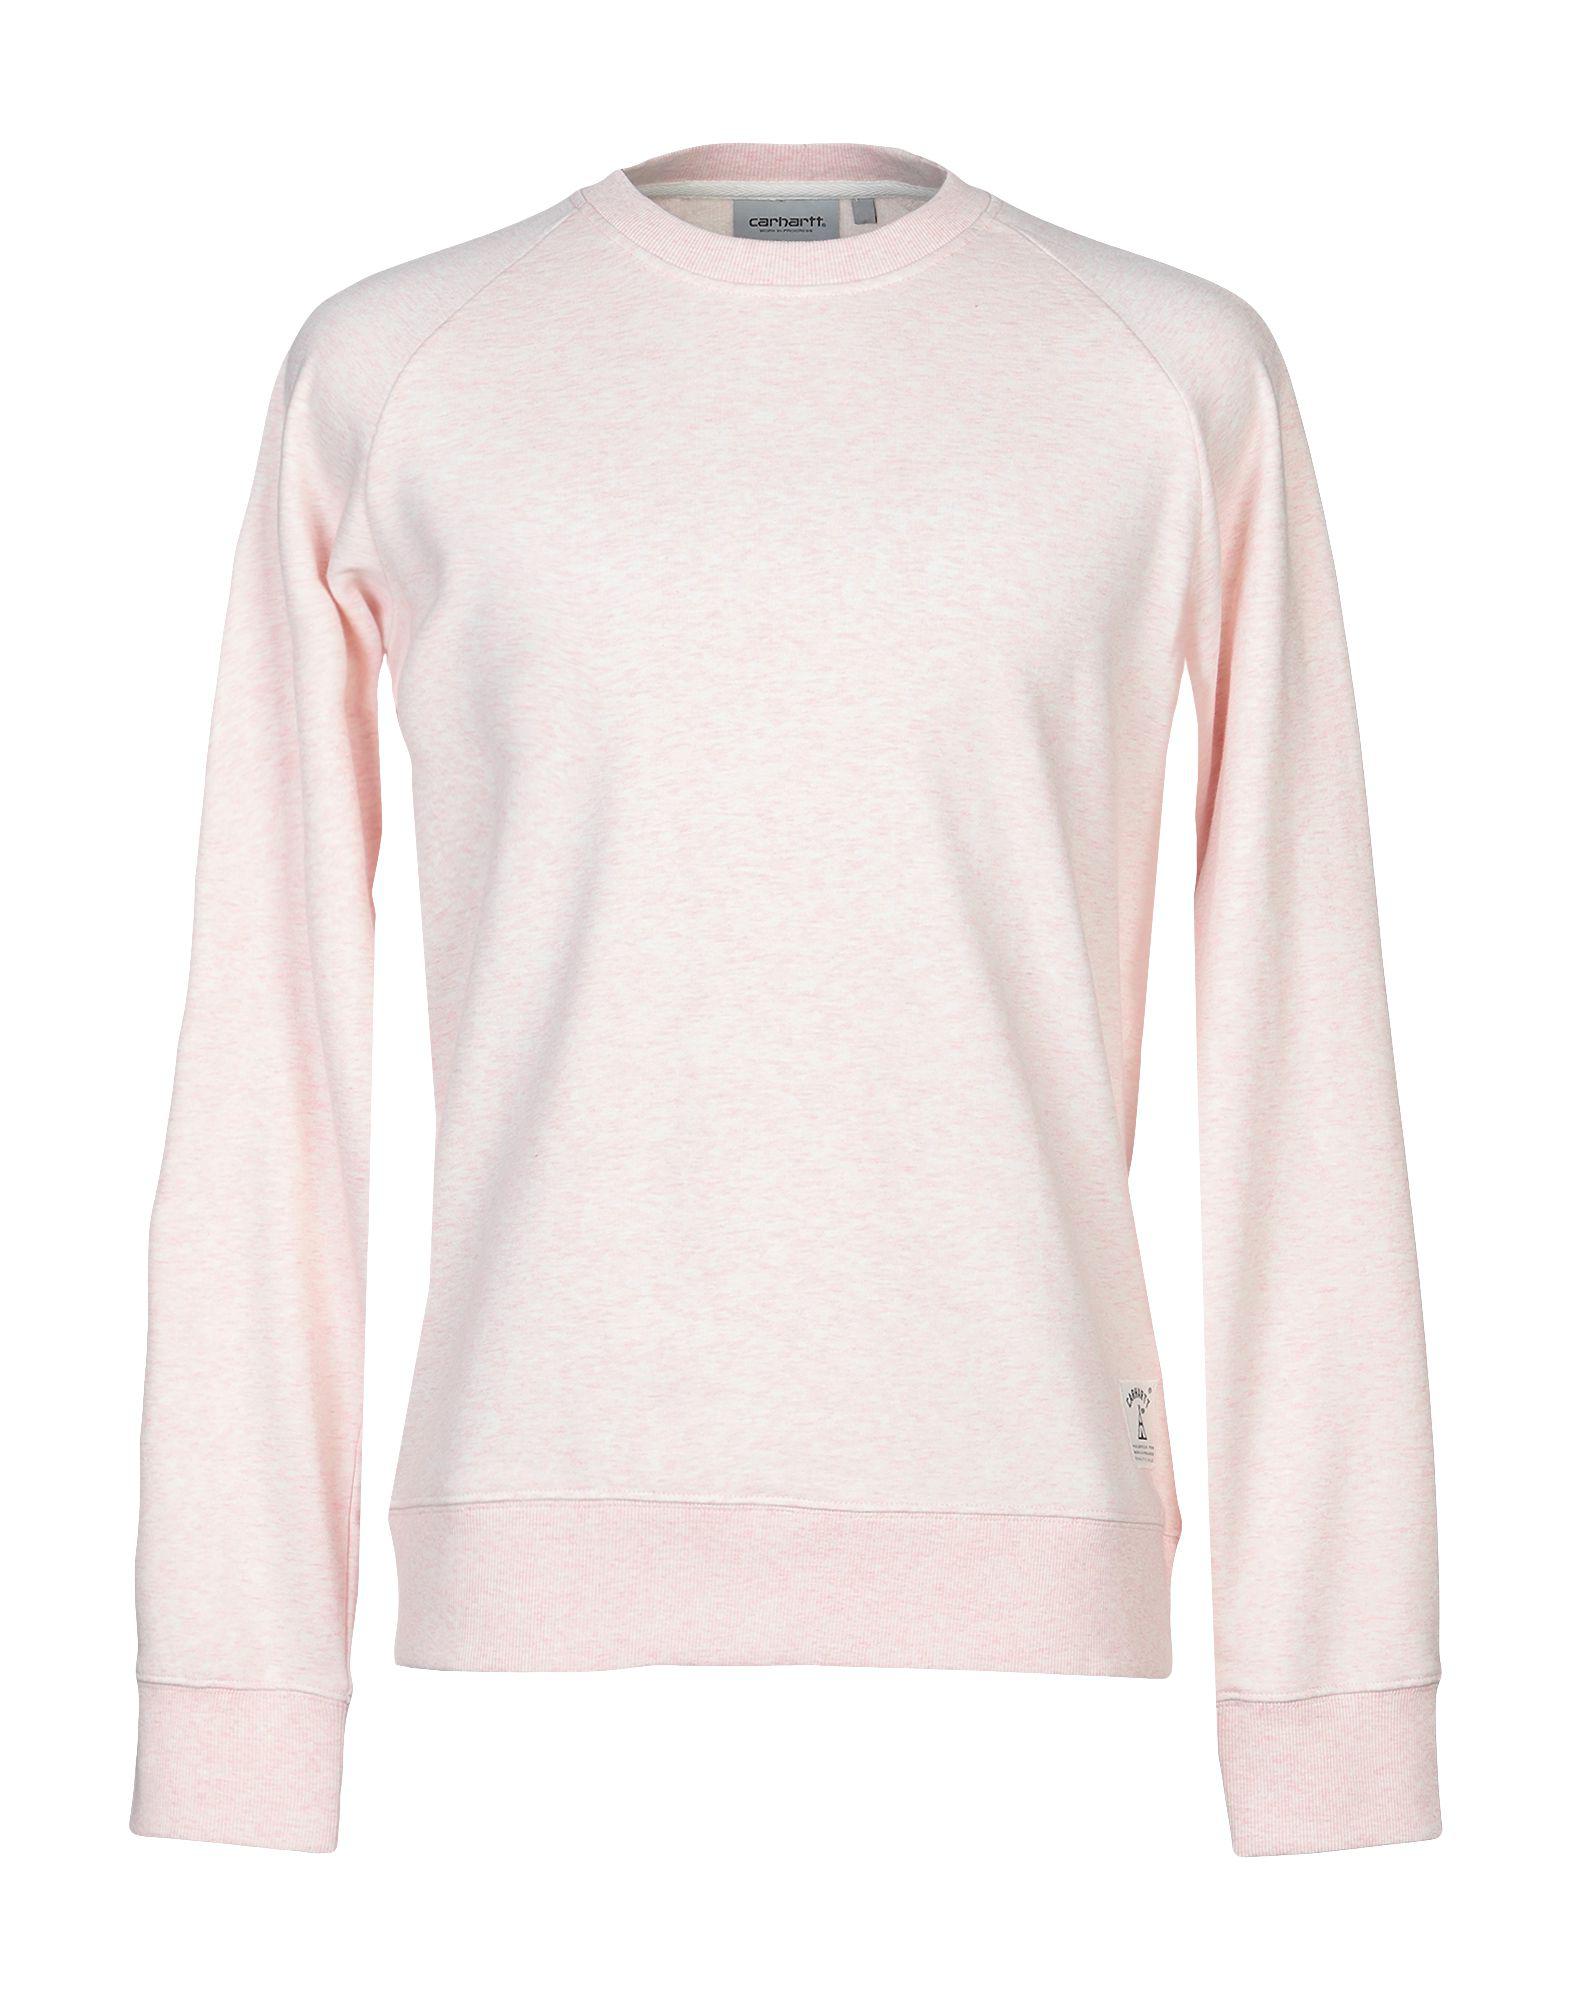 Carhartt Sweatshirt in Pink for Men - Lyst